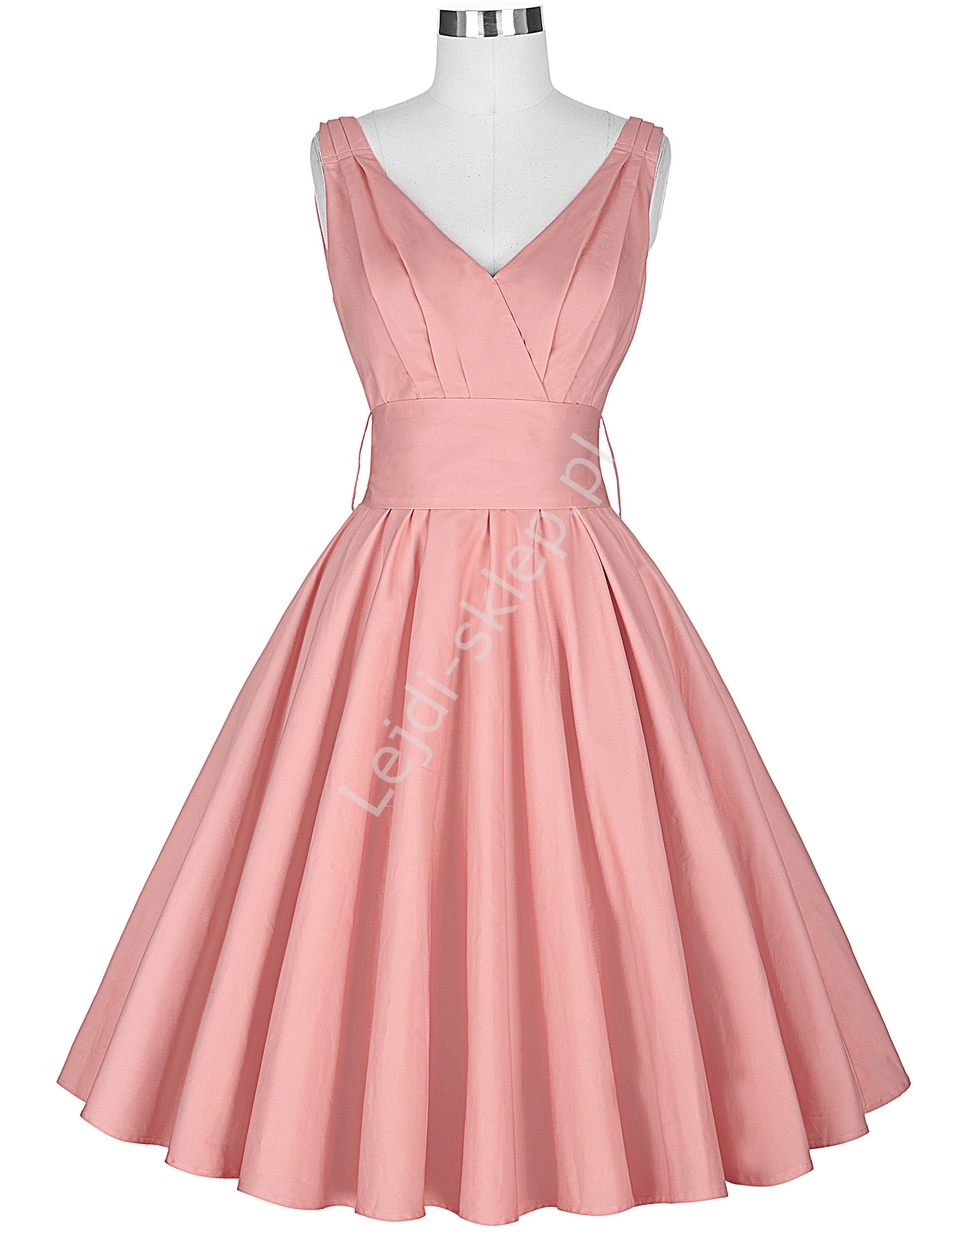 Bawełniana sukienka w stylu vintage, lata 60-te 8955